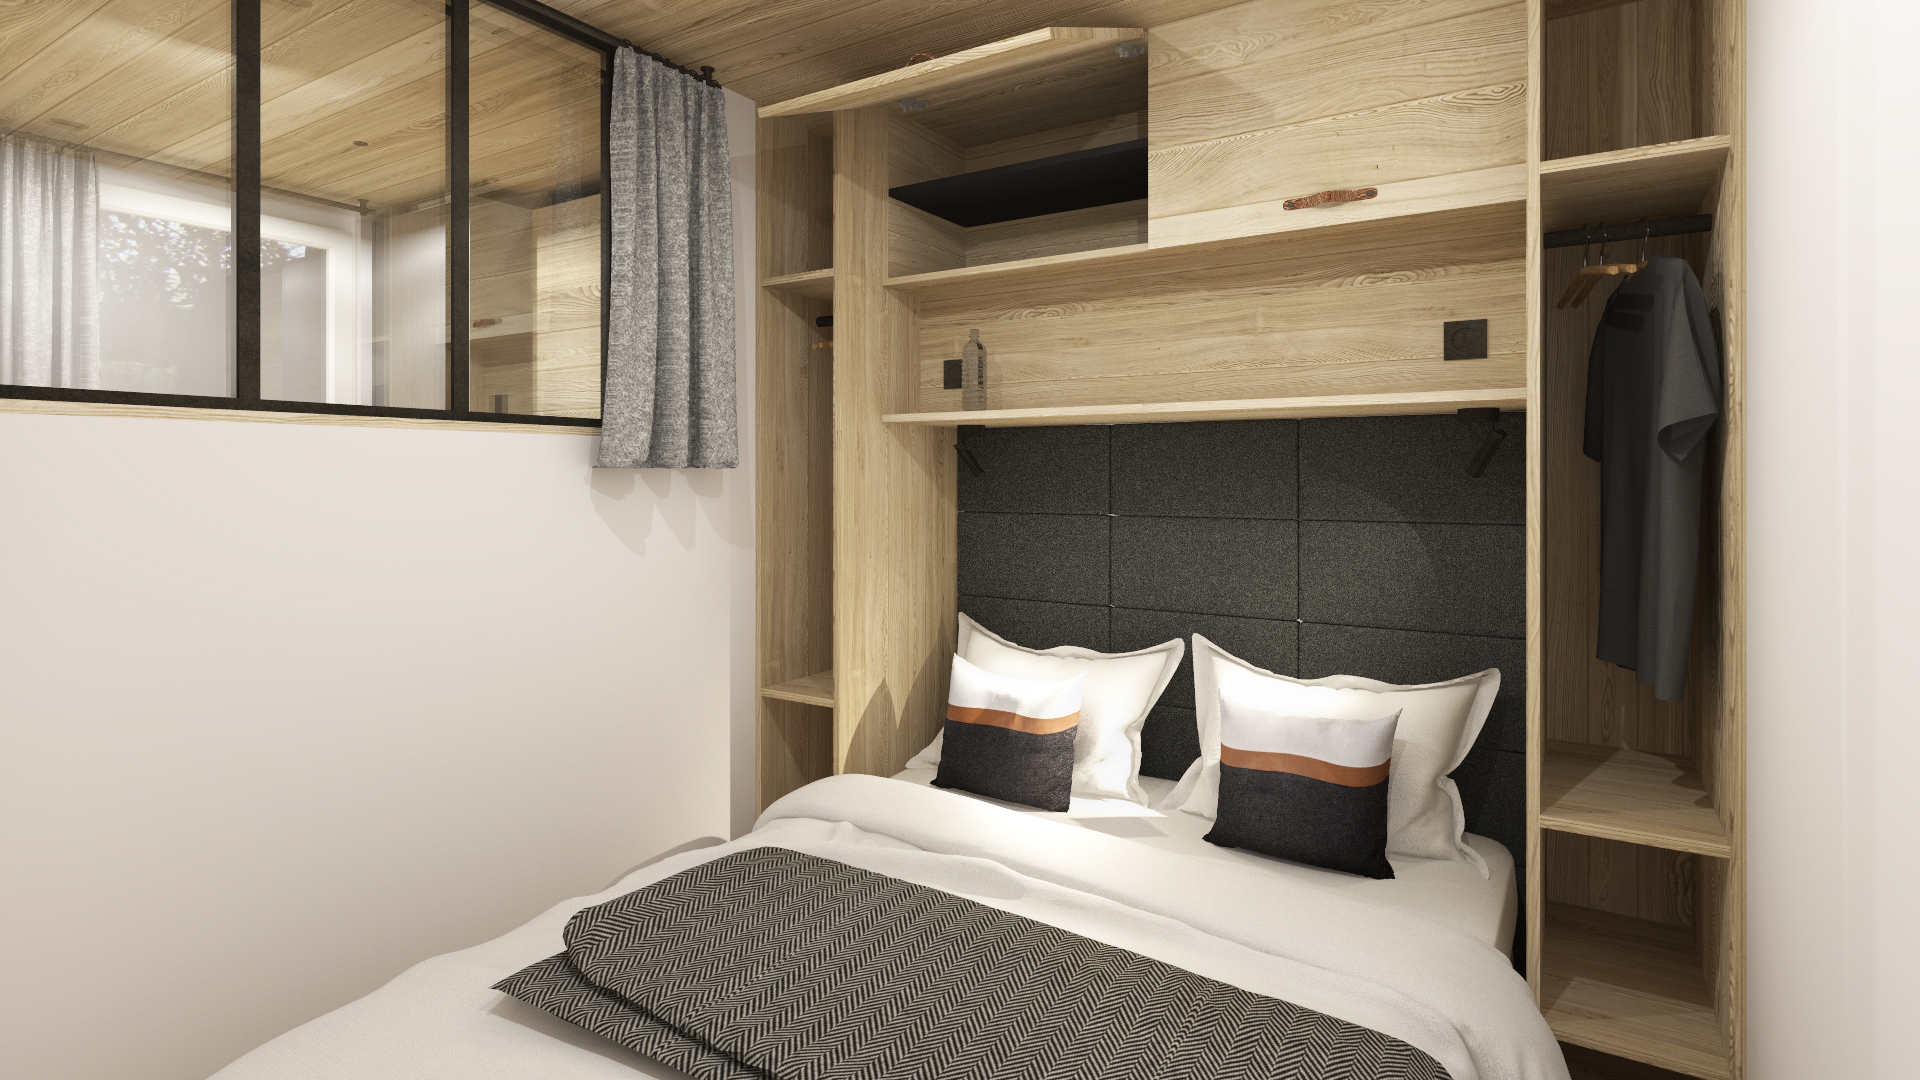 projet grisons visuel 3D modélisation studio montagne optimisé bois noir chambre rangement meubles